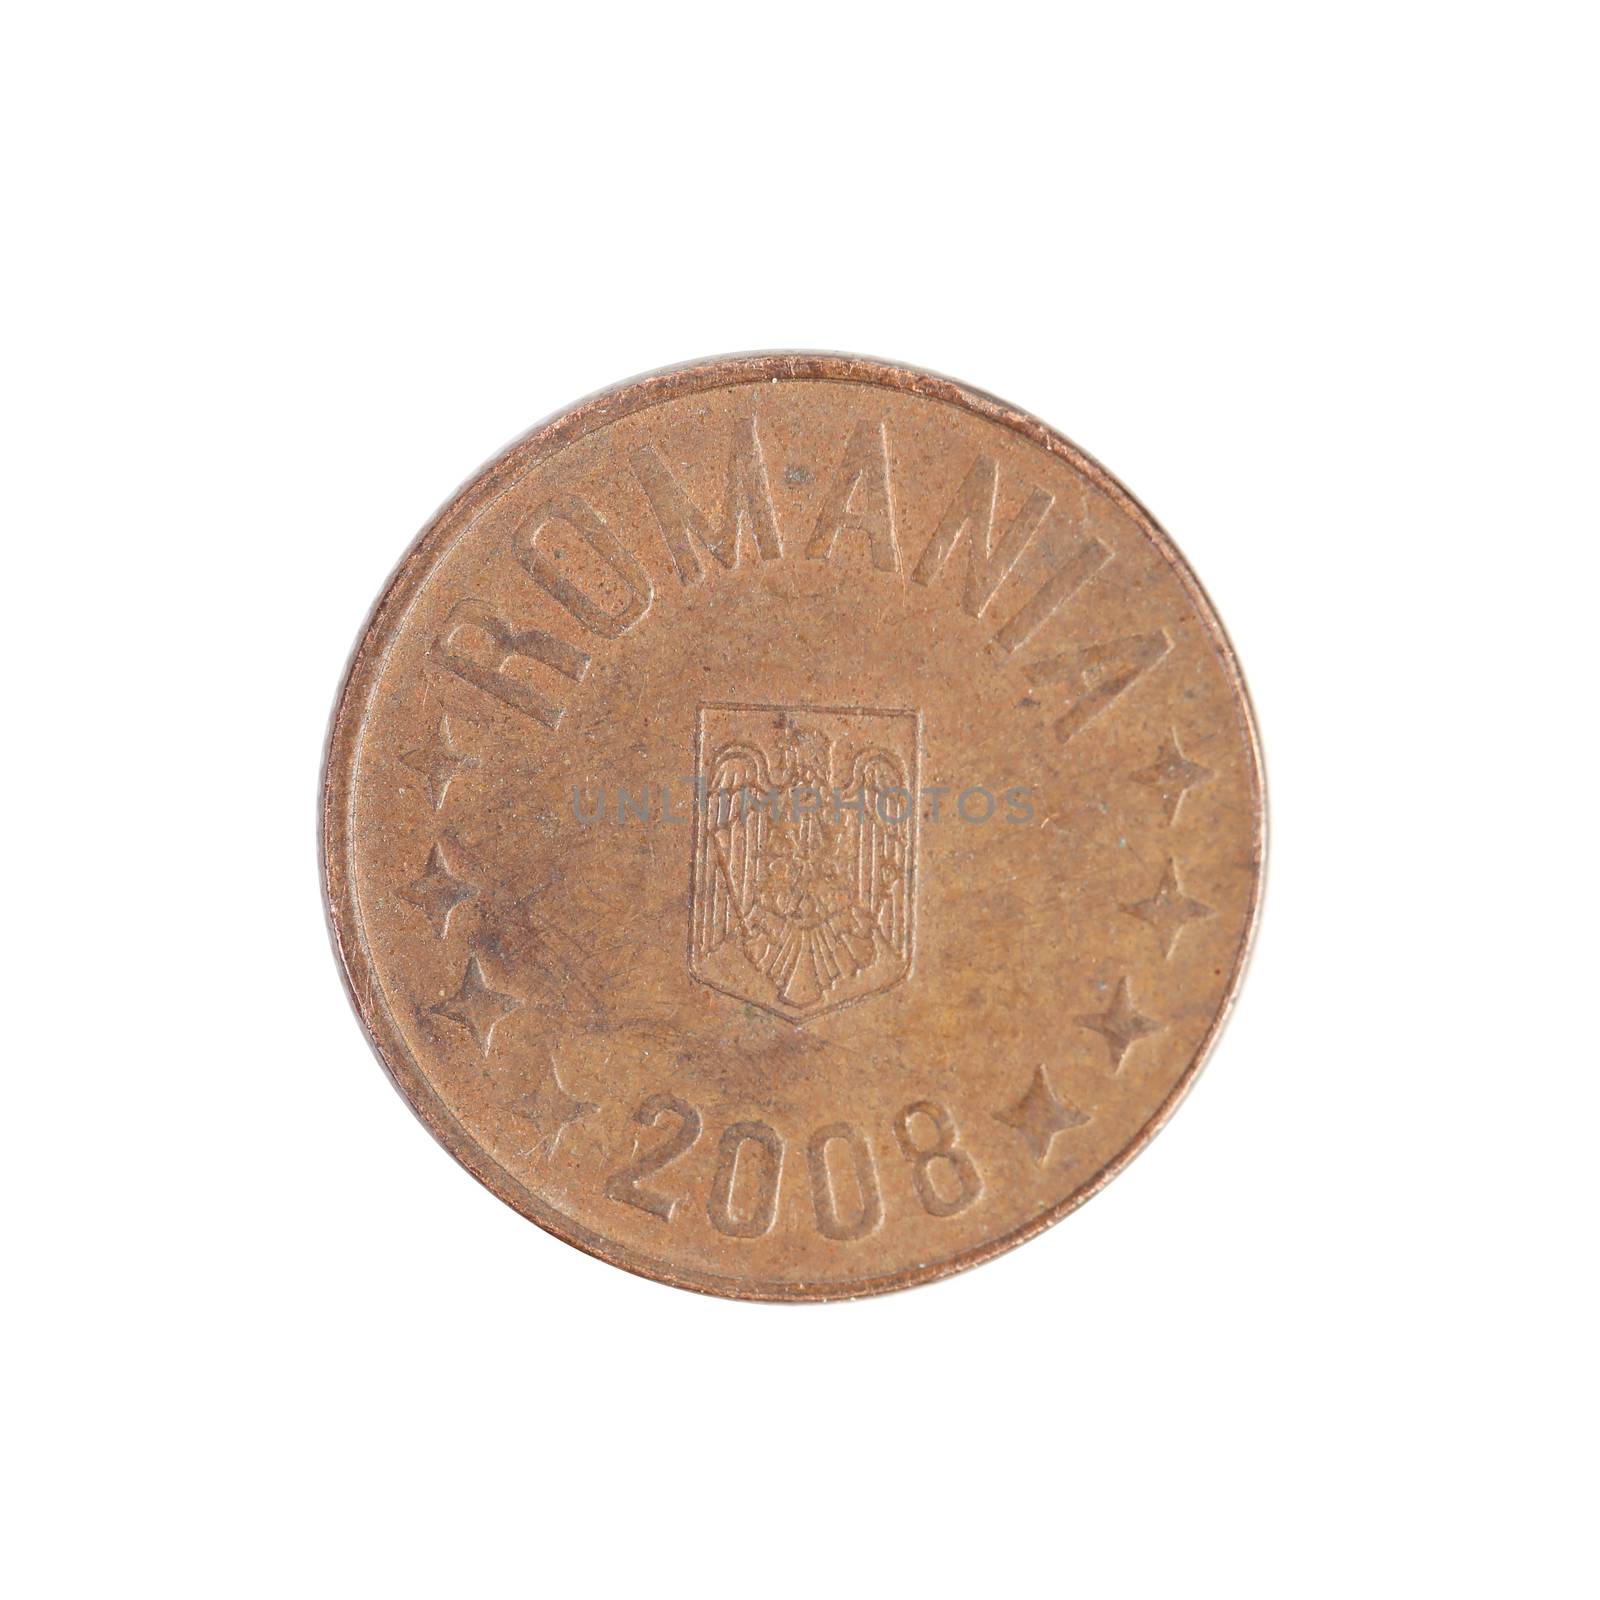 Romanian coin 2008 year. by indigolotos